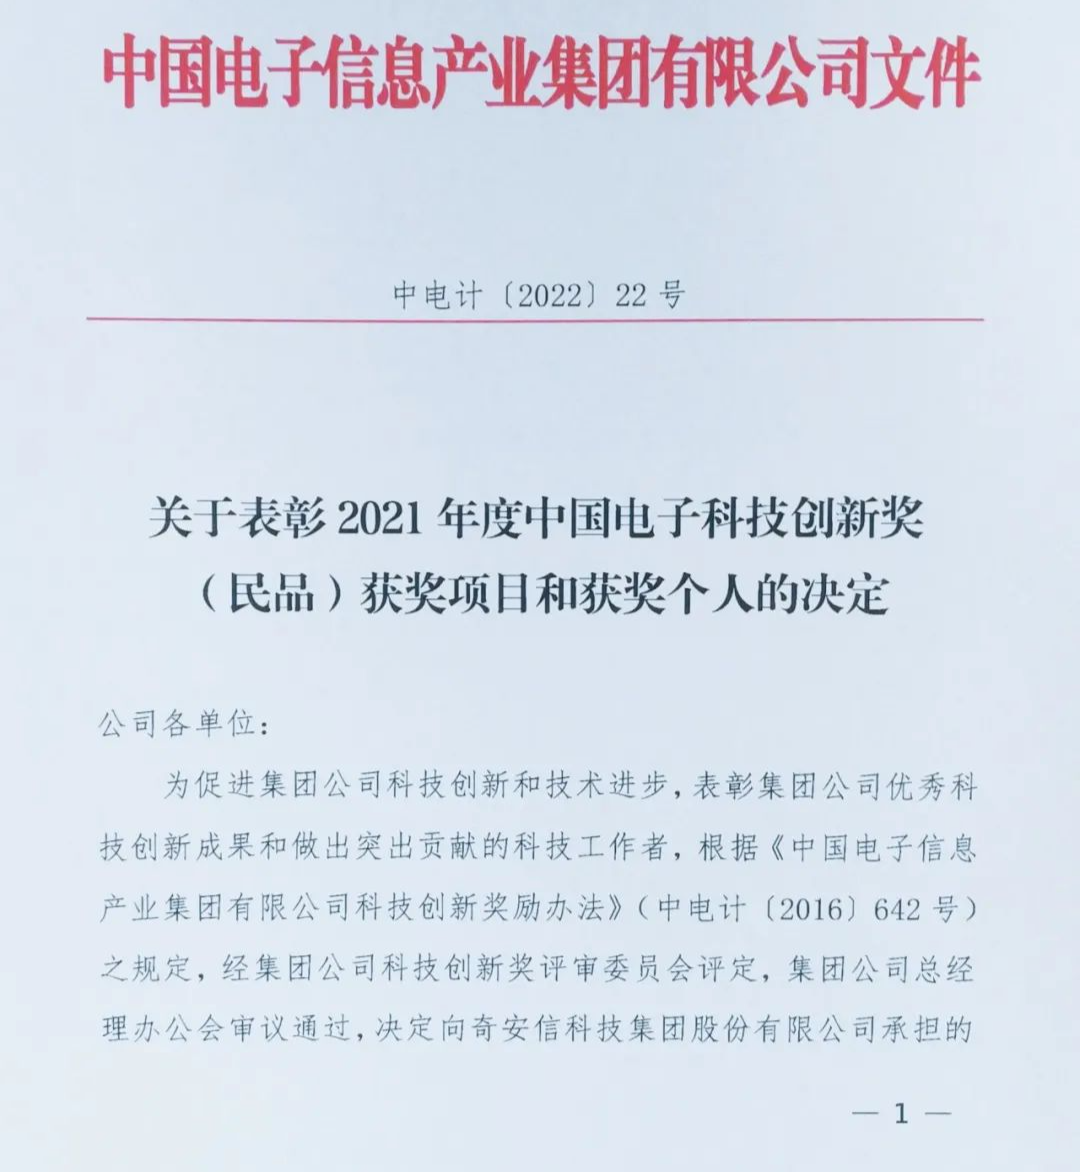 奇安信荣获中国电子2021年度科技进步奖一、二等奖